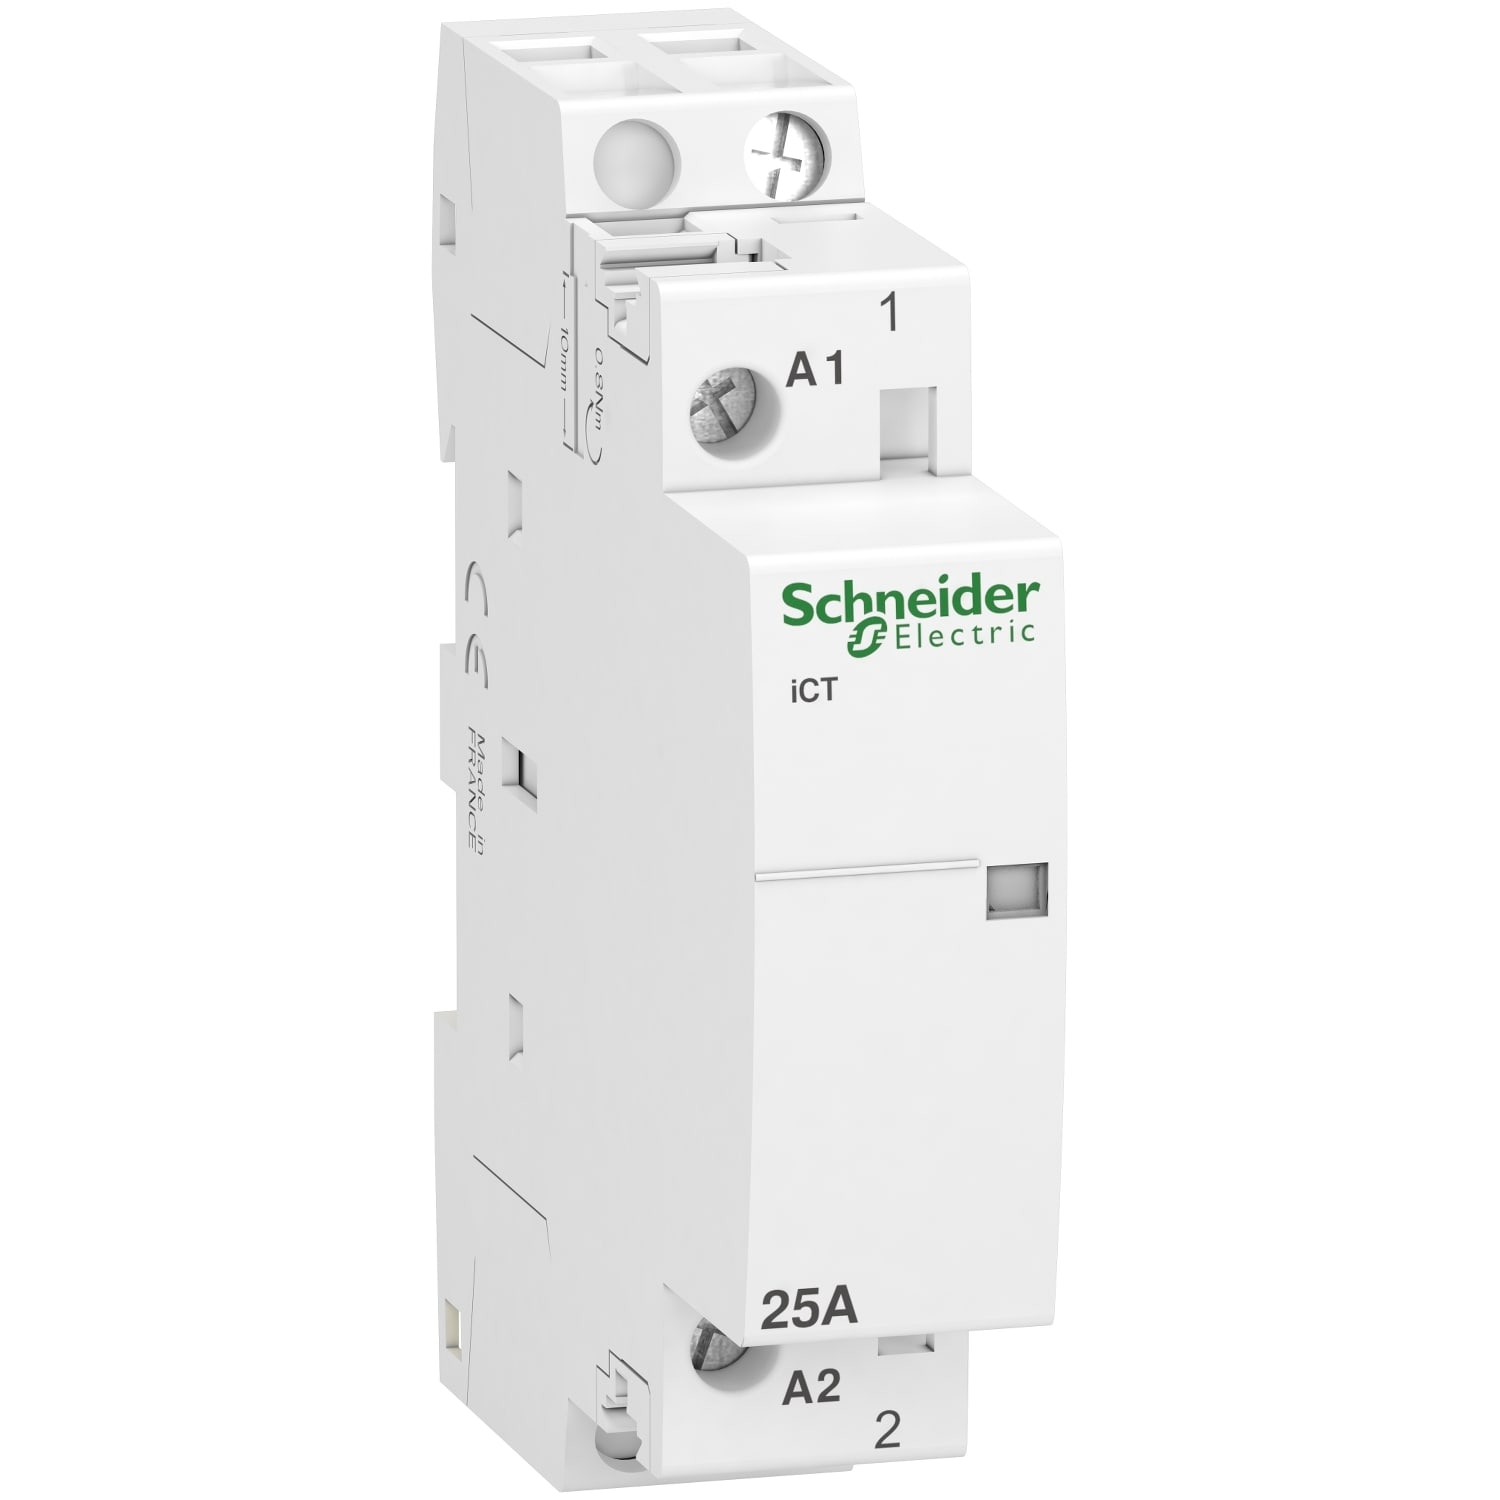 Schneider Electric - Acti9 iCT - Contacteur auxiliarisable - 1P - 25A - 1NO - 230-240Vca - 50Hz